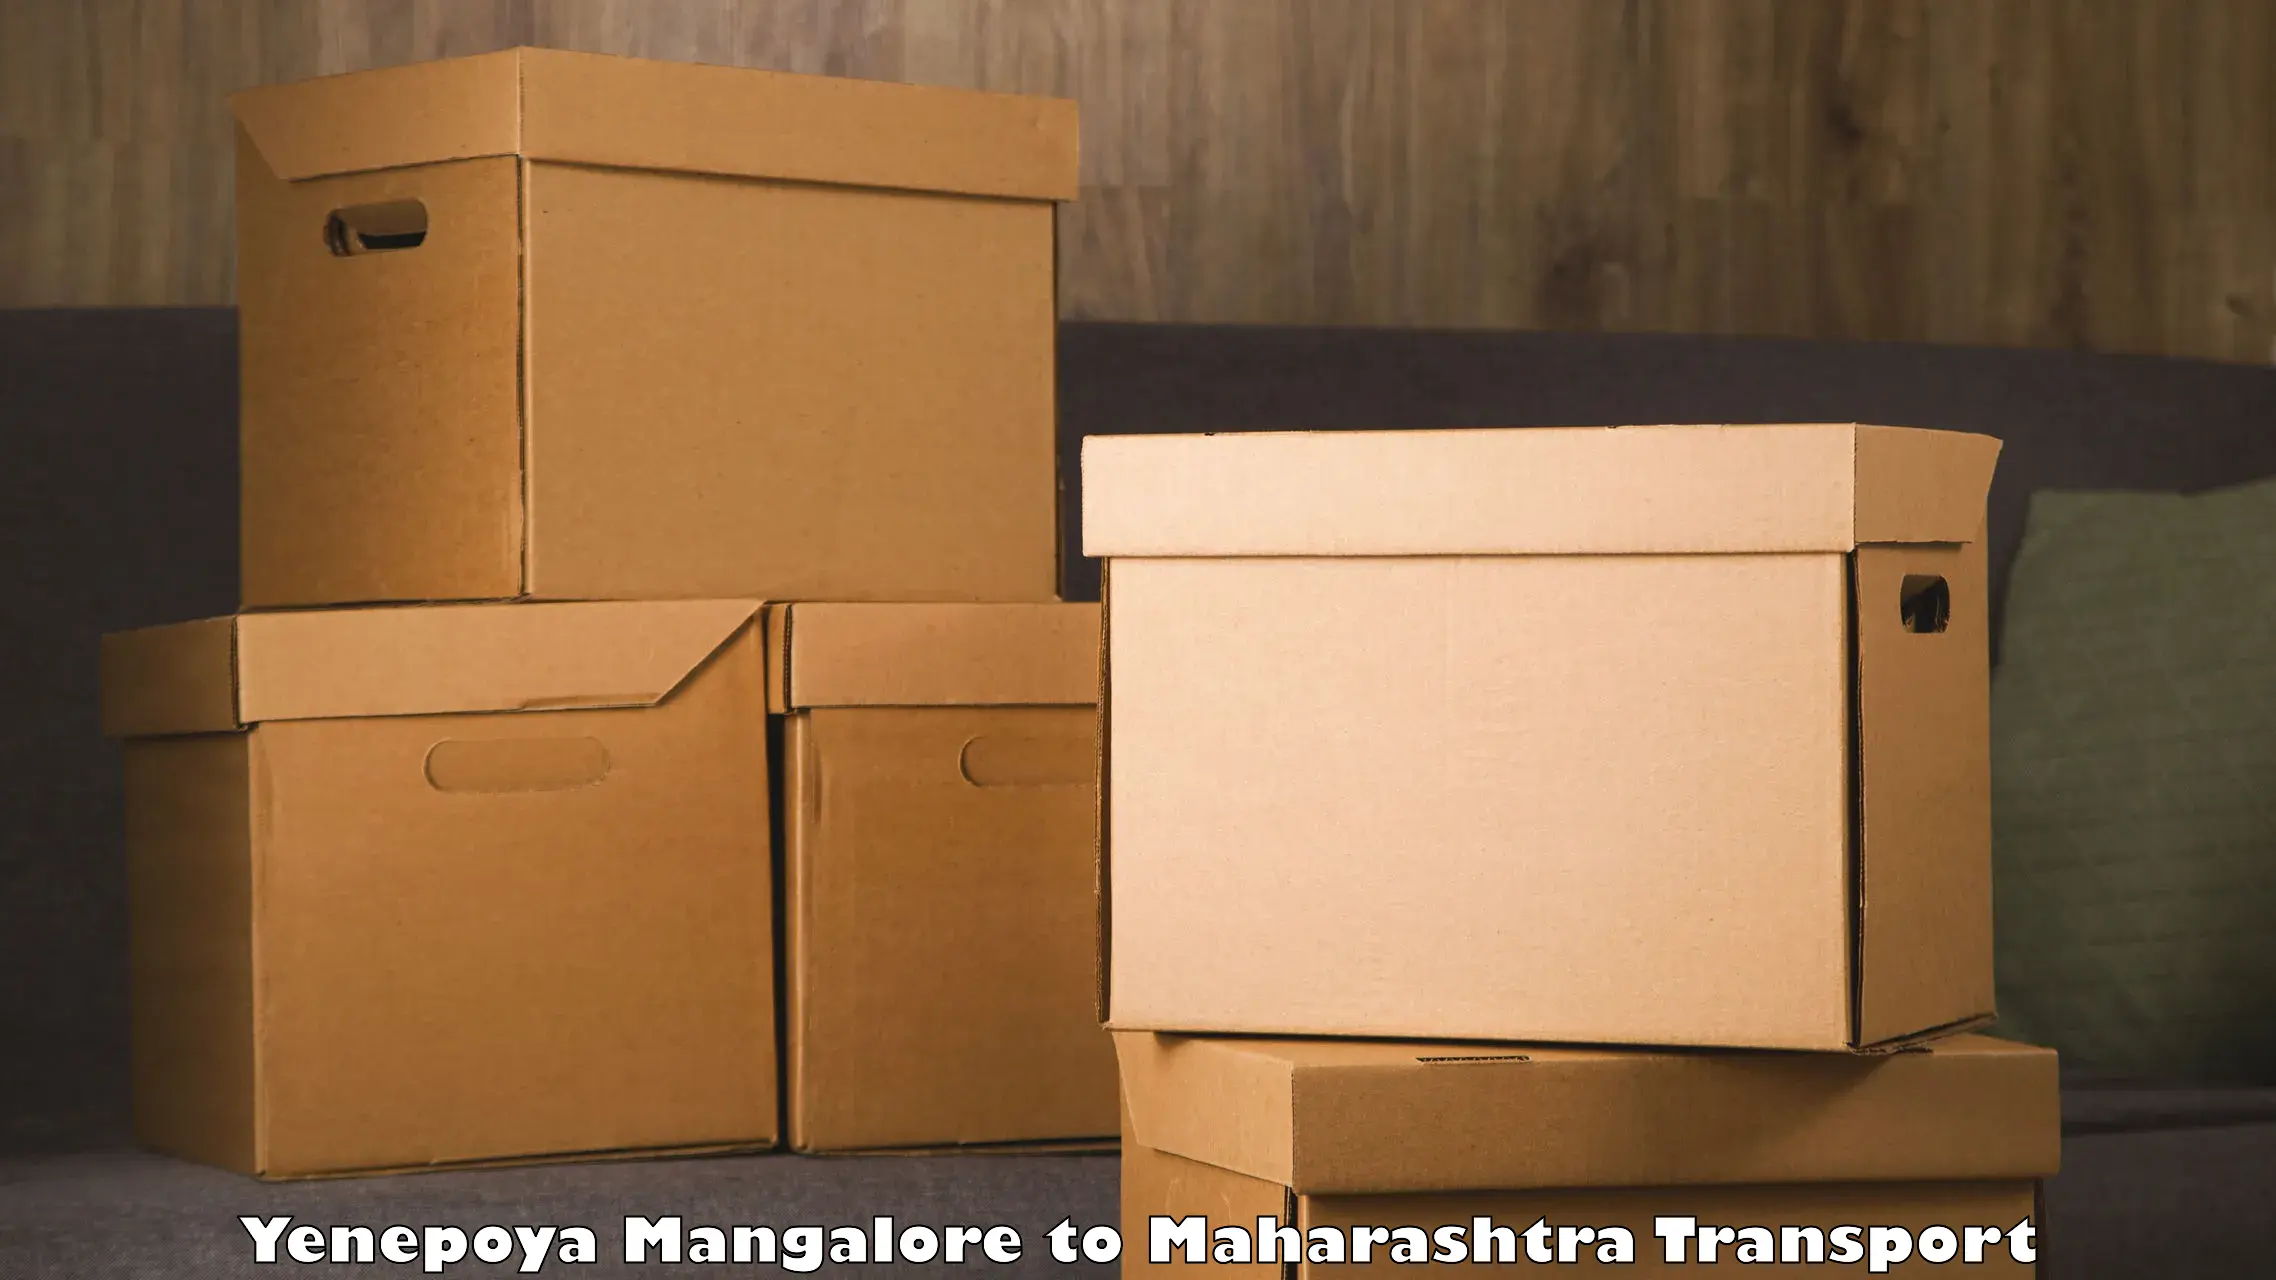 Commercial transport service Yenepoya Mangalore to Deulgaon Raja